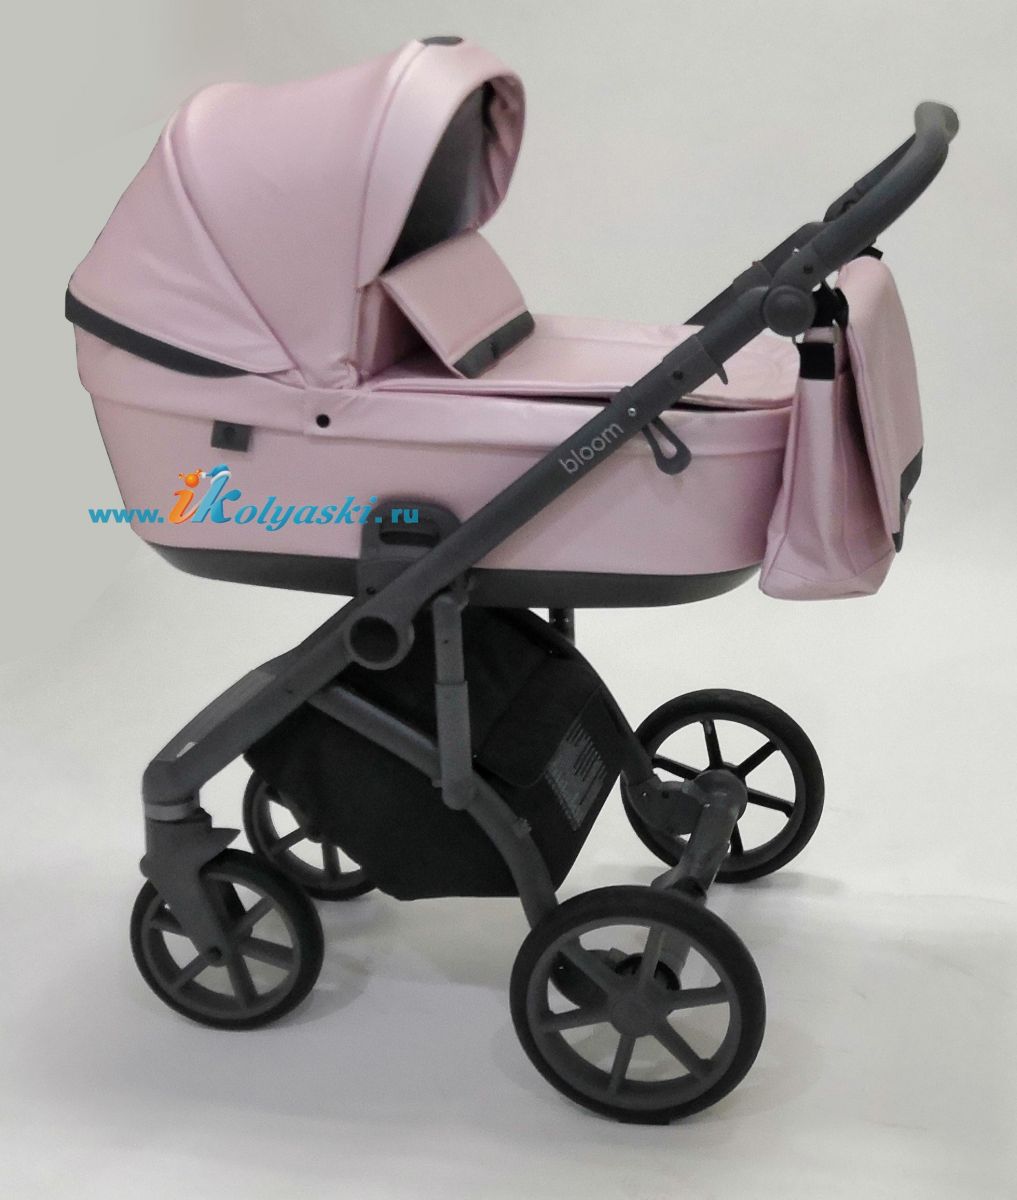 Roan Bloom 3 в 1 детская коляска для новорожденного на гелиевых бескамерных поворотных колесах с прогулочным блоком и автокреслом - купить в интернет-магазине в Москве с доставкой по РФ - цвет  Pink Pearl 